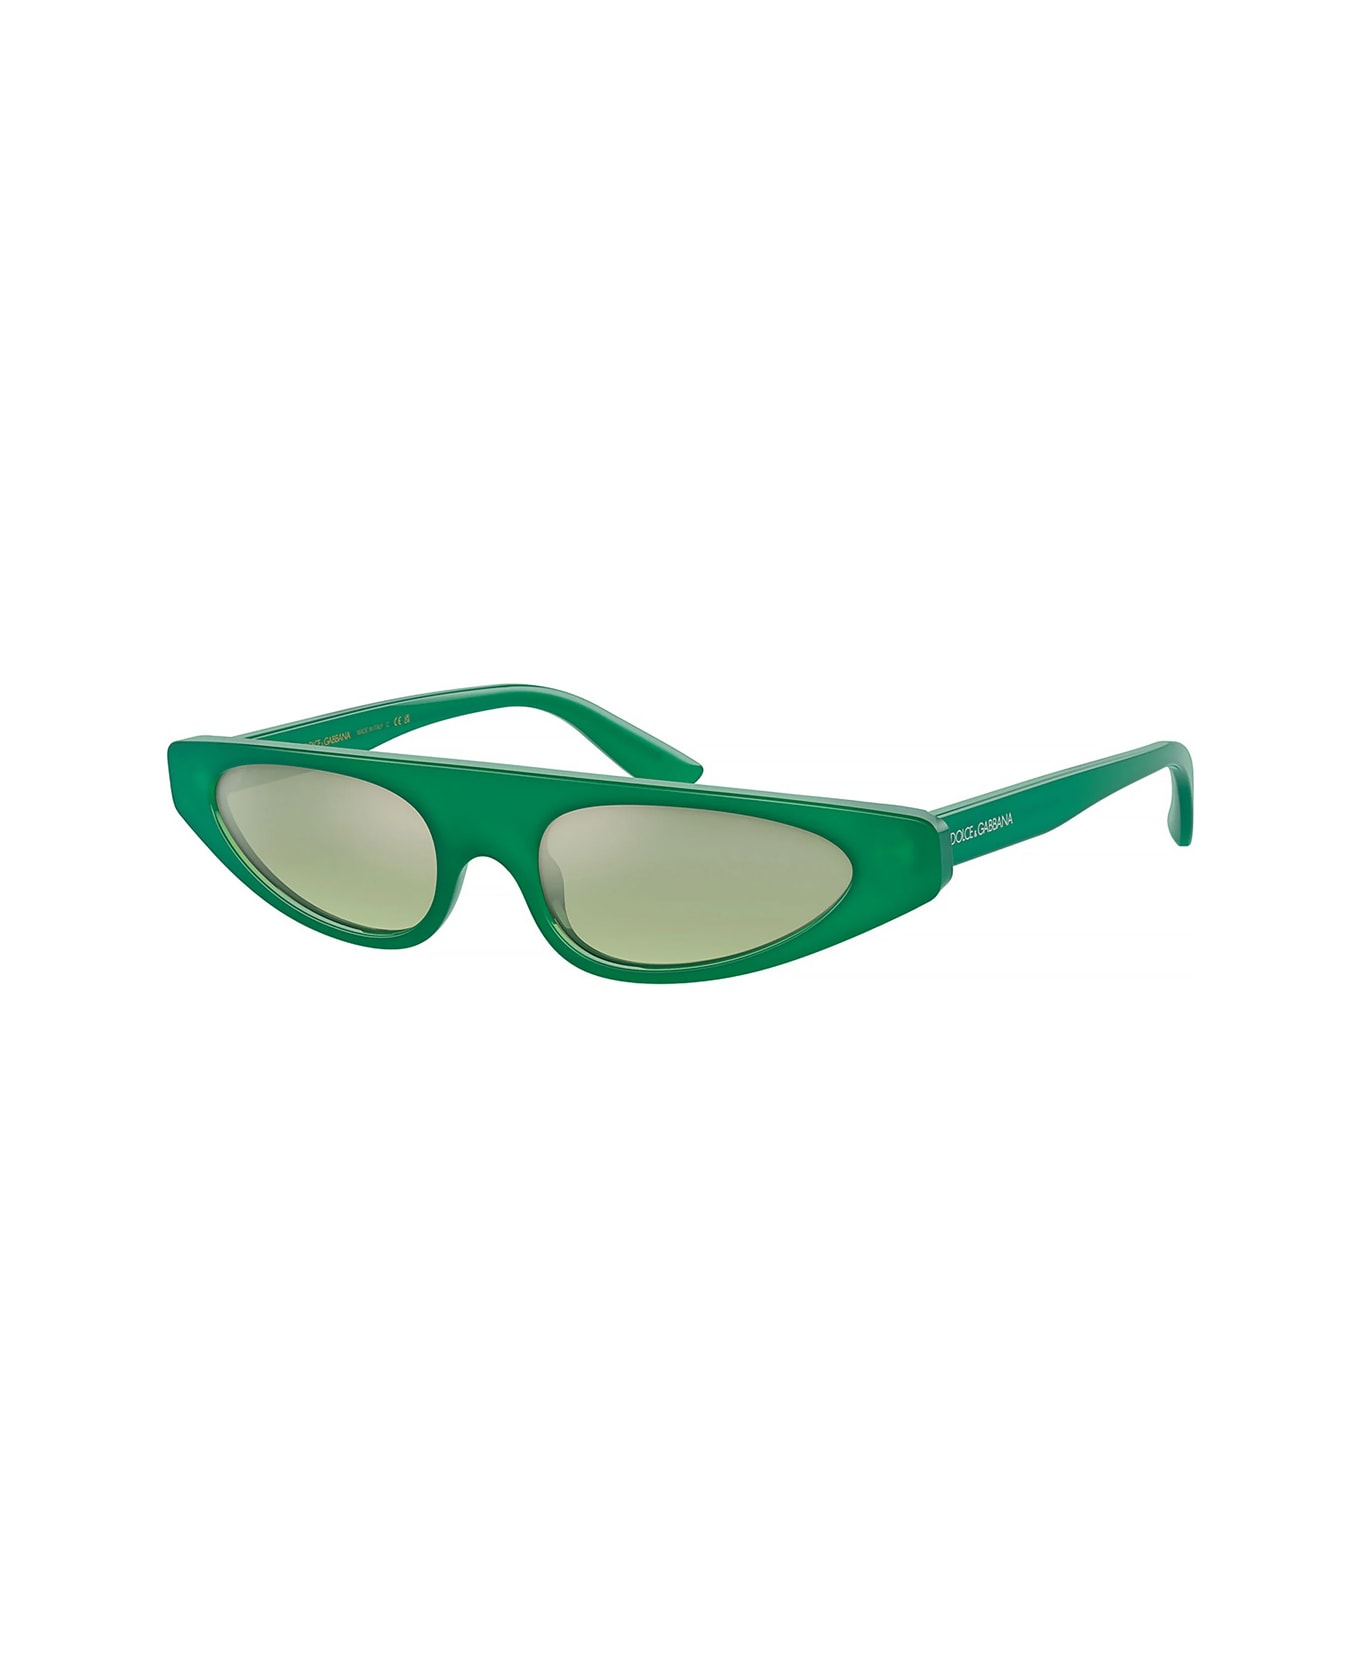 Dolce & Gabbana Eyewear Dg4442 306852 Sunglasses - Verde サングラス